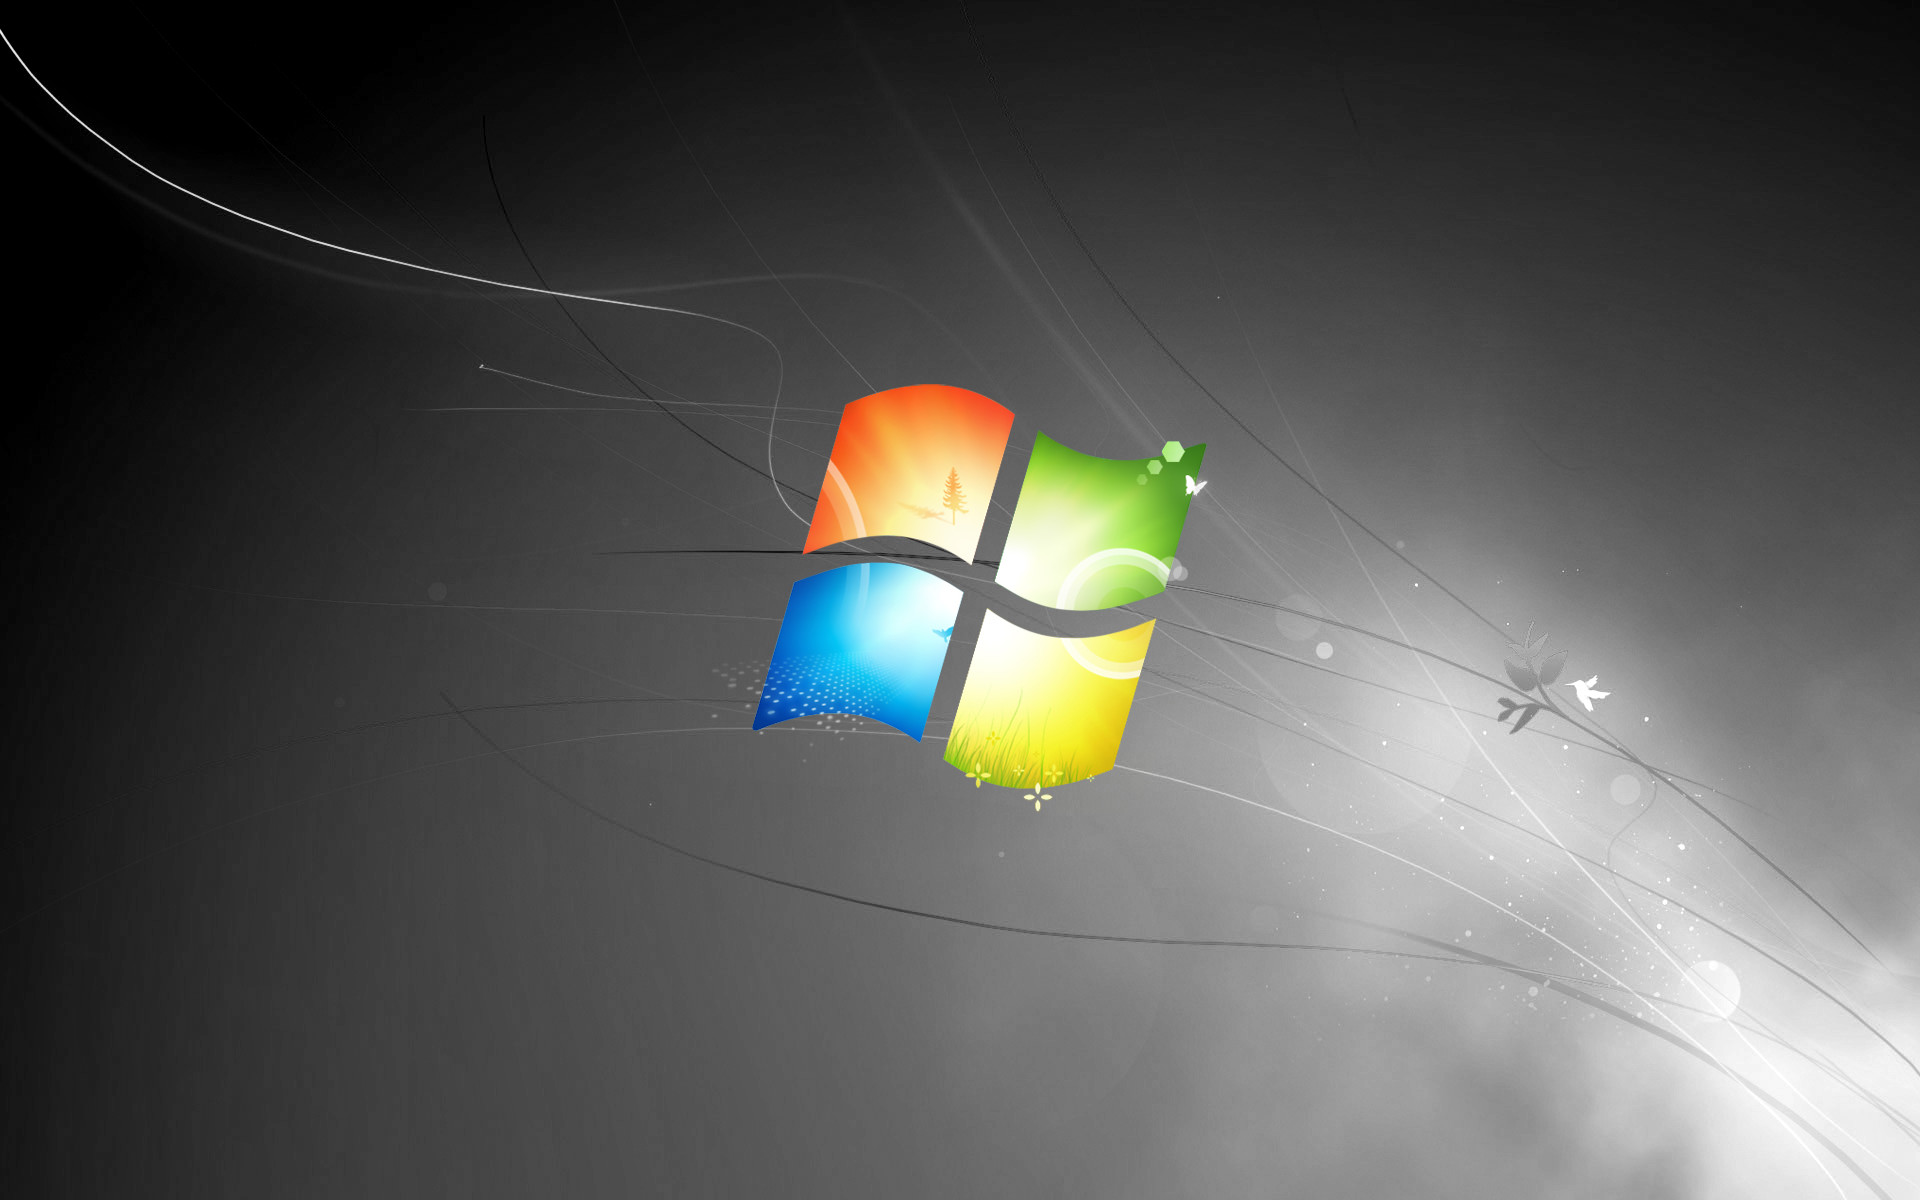 Hình nền Windows 7 màu đen sẽ mang đến cho bạn một trải nghiệm thú vị với thiết kế bắt mắt. Chọn ngay hình nền màu đen để tạo nên sự chuyên nghiệp và trang nhã cho máy tính của bạn.